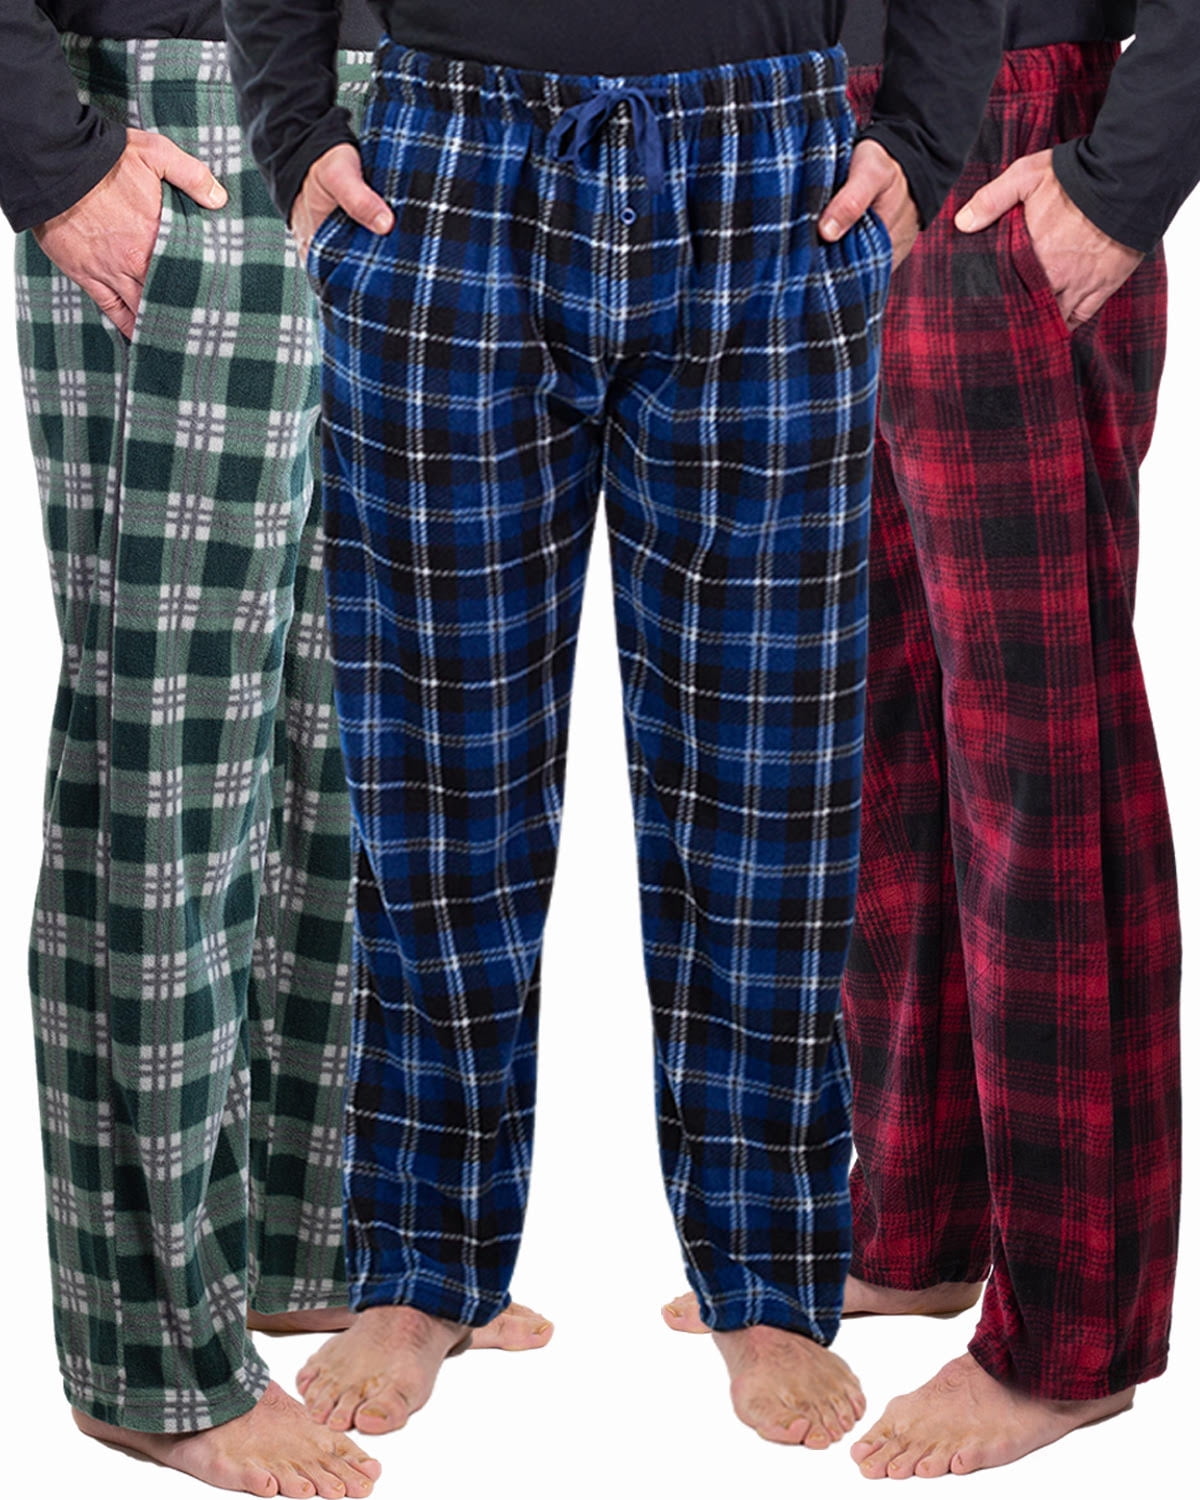 Personalised Initial Pyjamas Loungewear Baby Reveal Dad Gifts Mens PJs